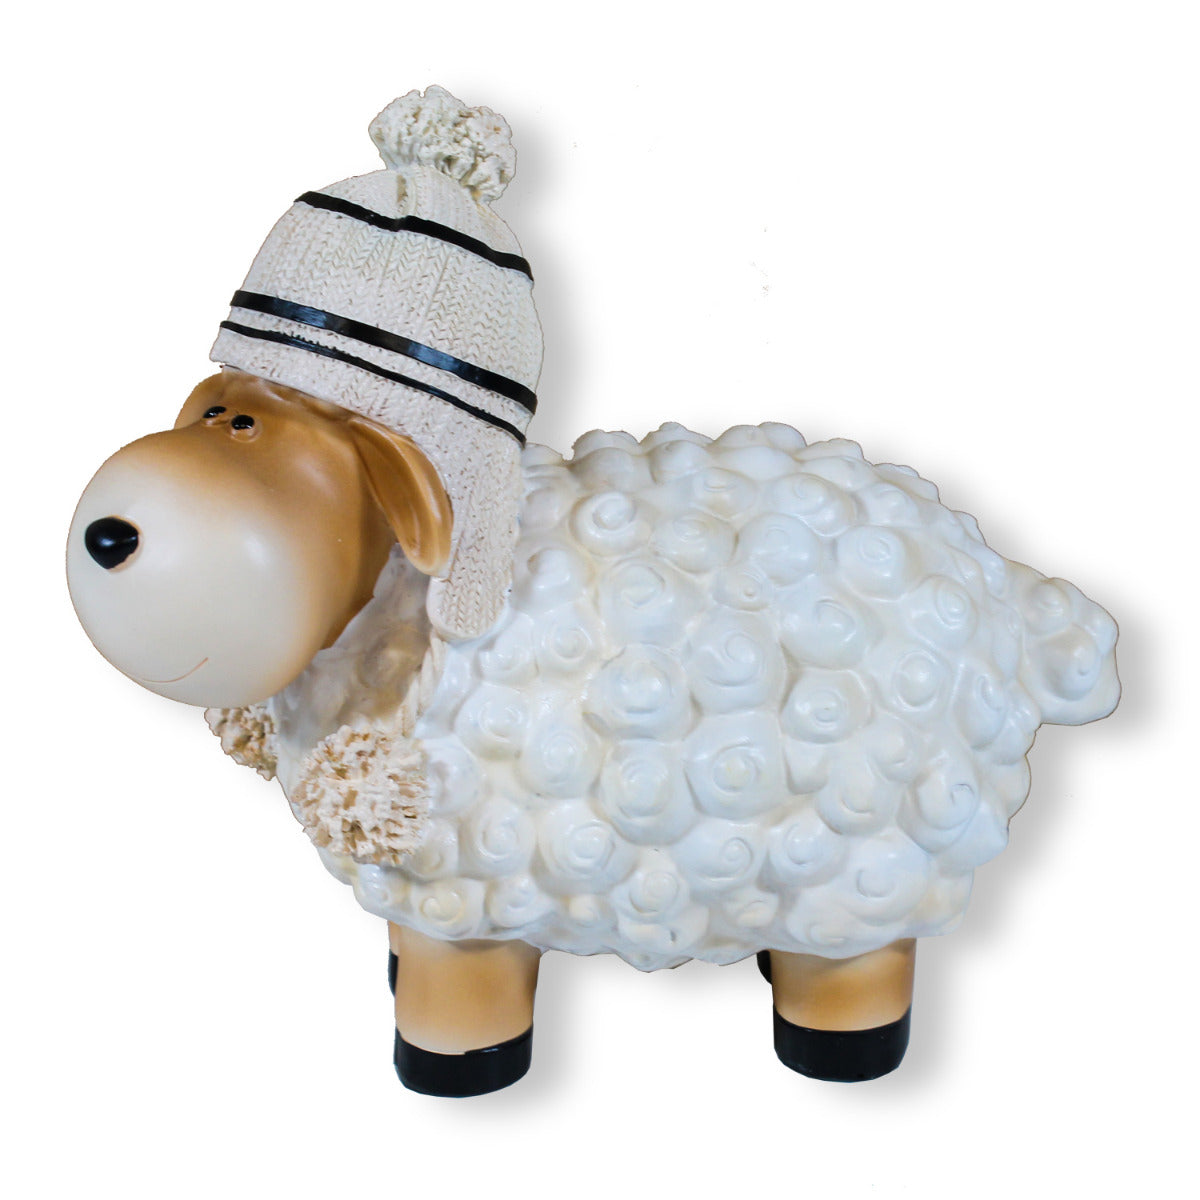 Buntes Deko Schaf weiß mit Mütze Gartenfigur Schaf Dekofigur Schaf lustige Schafe